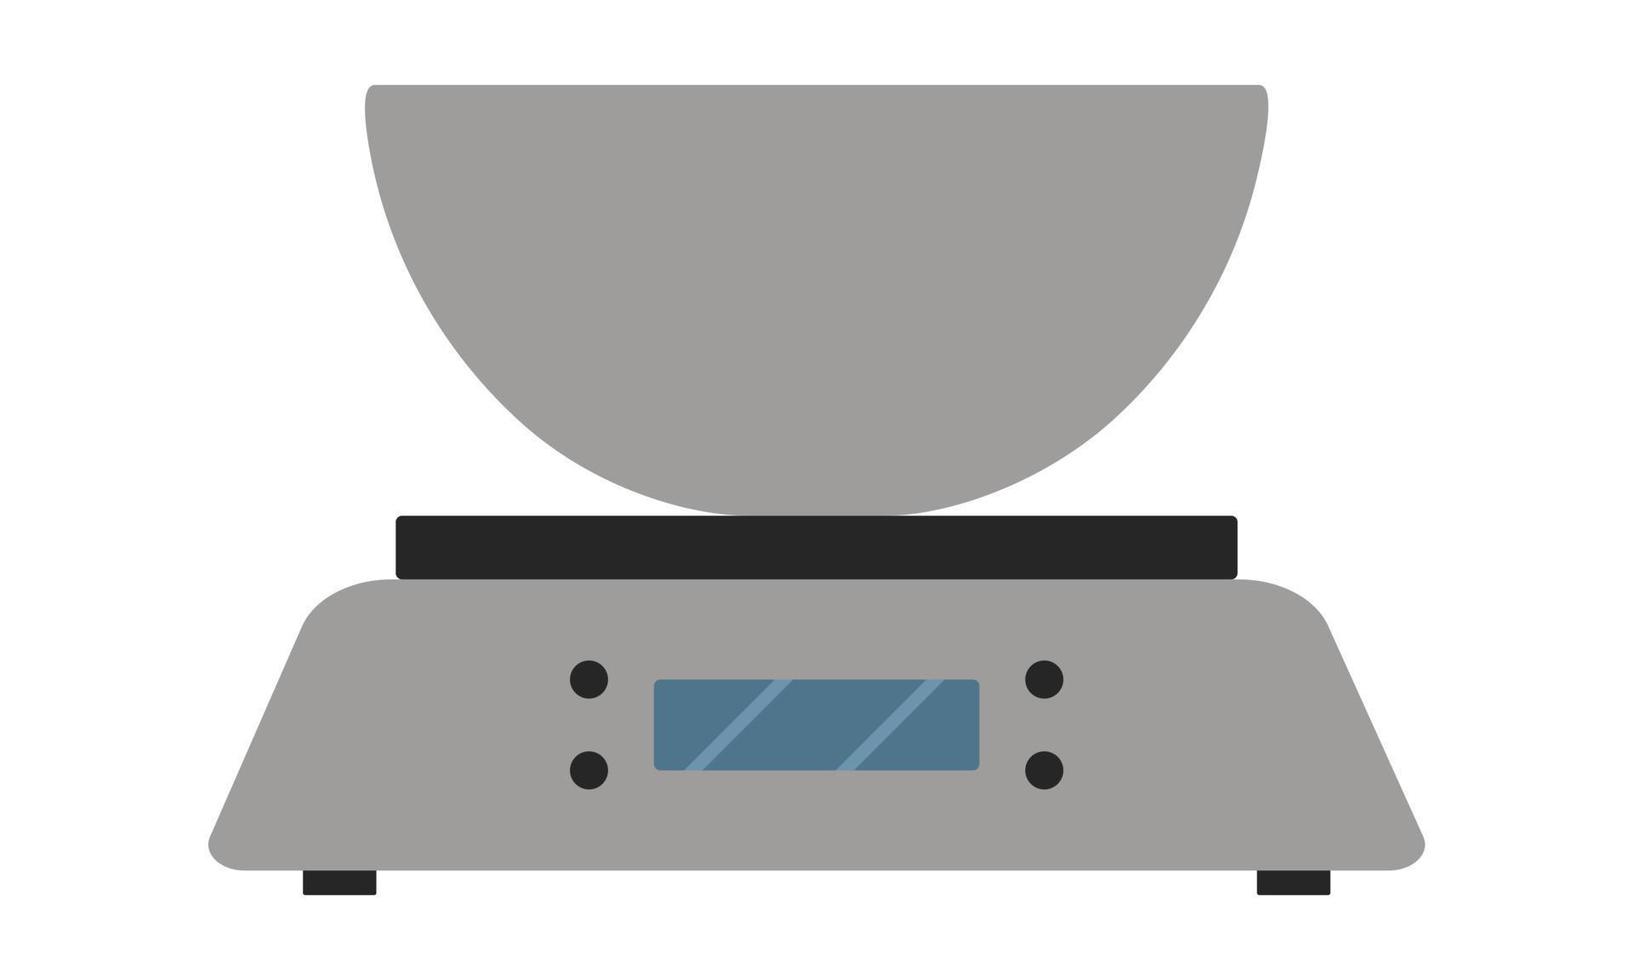 balanças eletrônicas de cozinha com tanque de pesagem. aparelho de cozinha para determinar o peso dos produtos. estilo plano. ilustração vetorial vetor